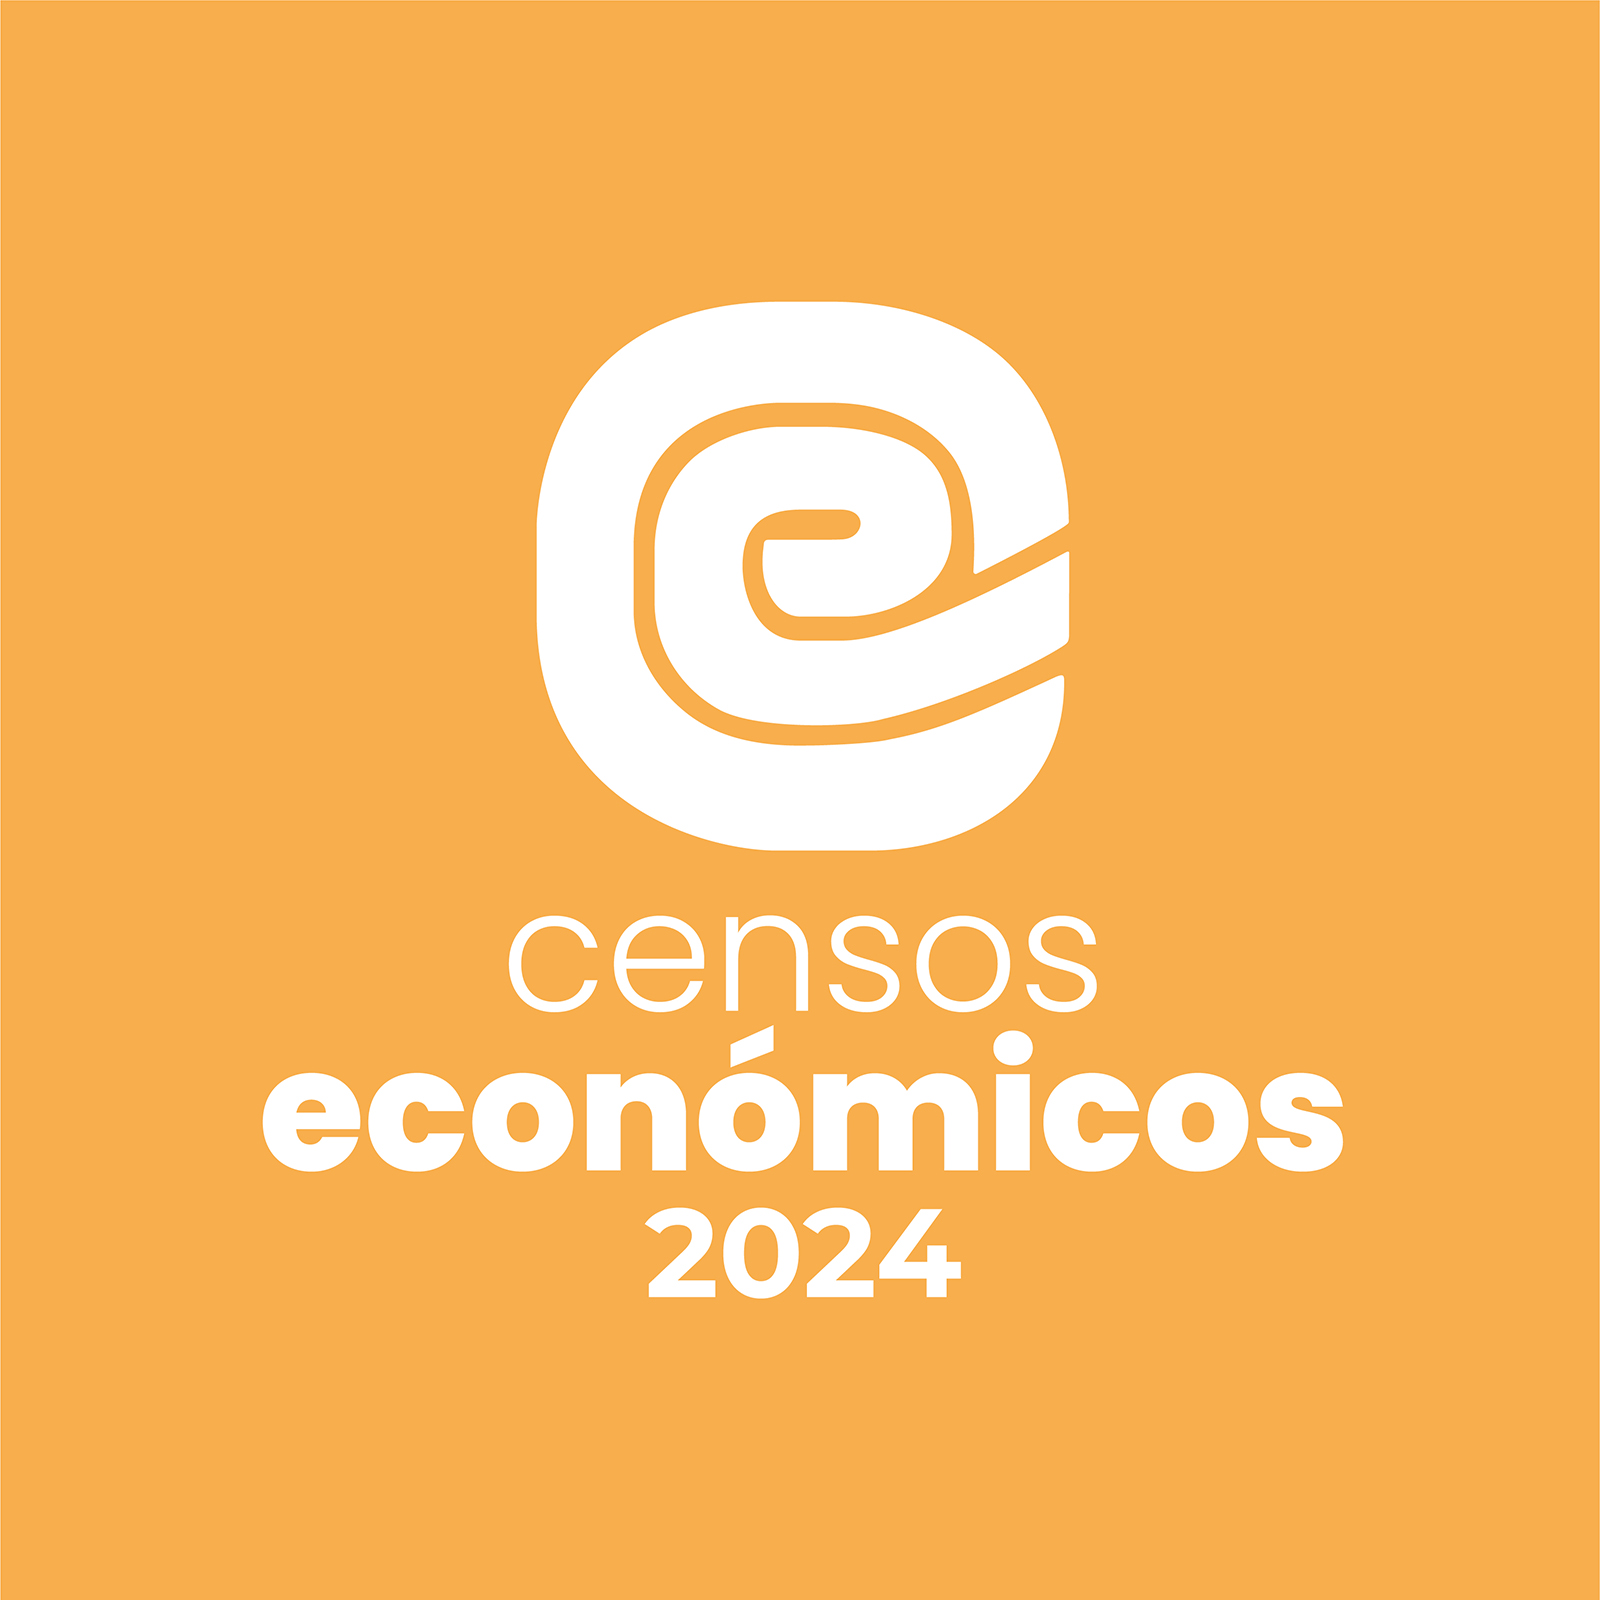 Logotipo Censo Agropecuario 2022 en jpg, horizontal calado